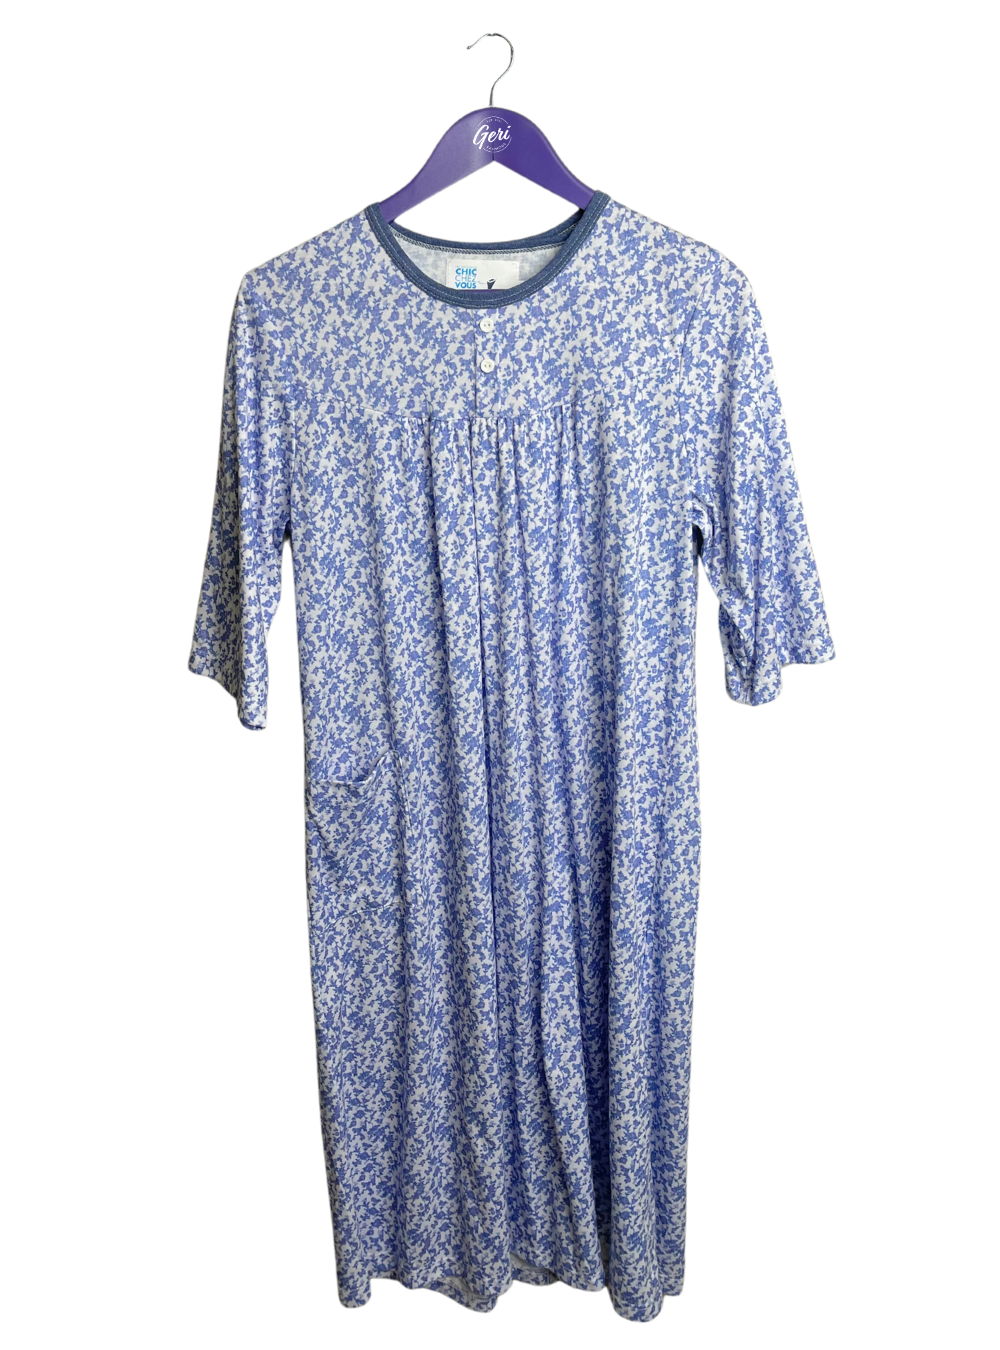 Women's Knit Adaptive Nightgown